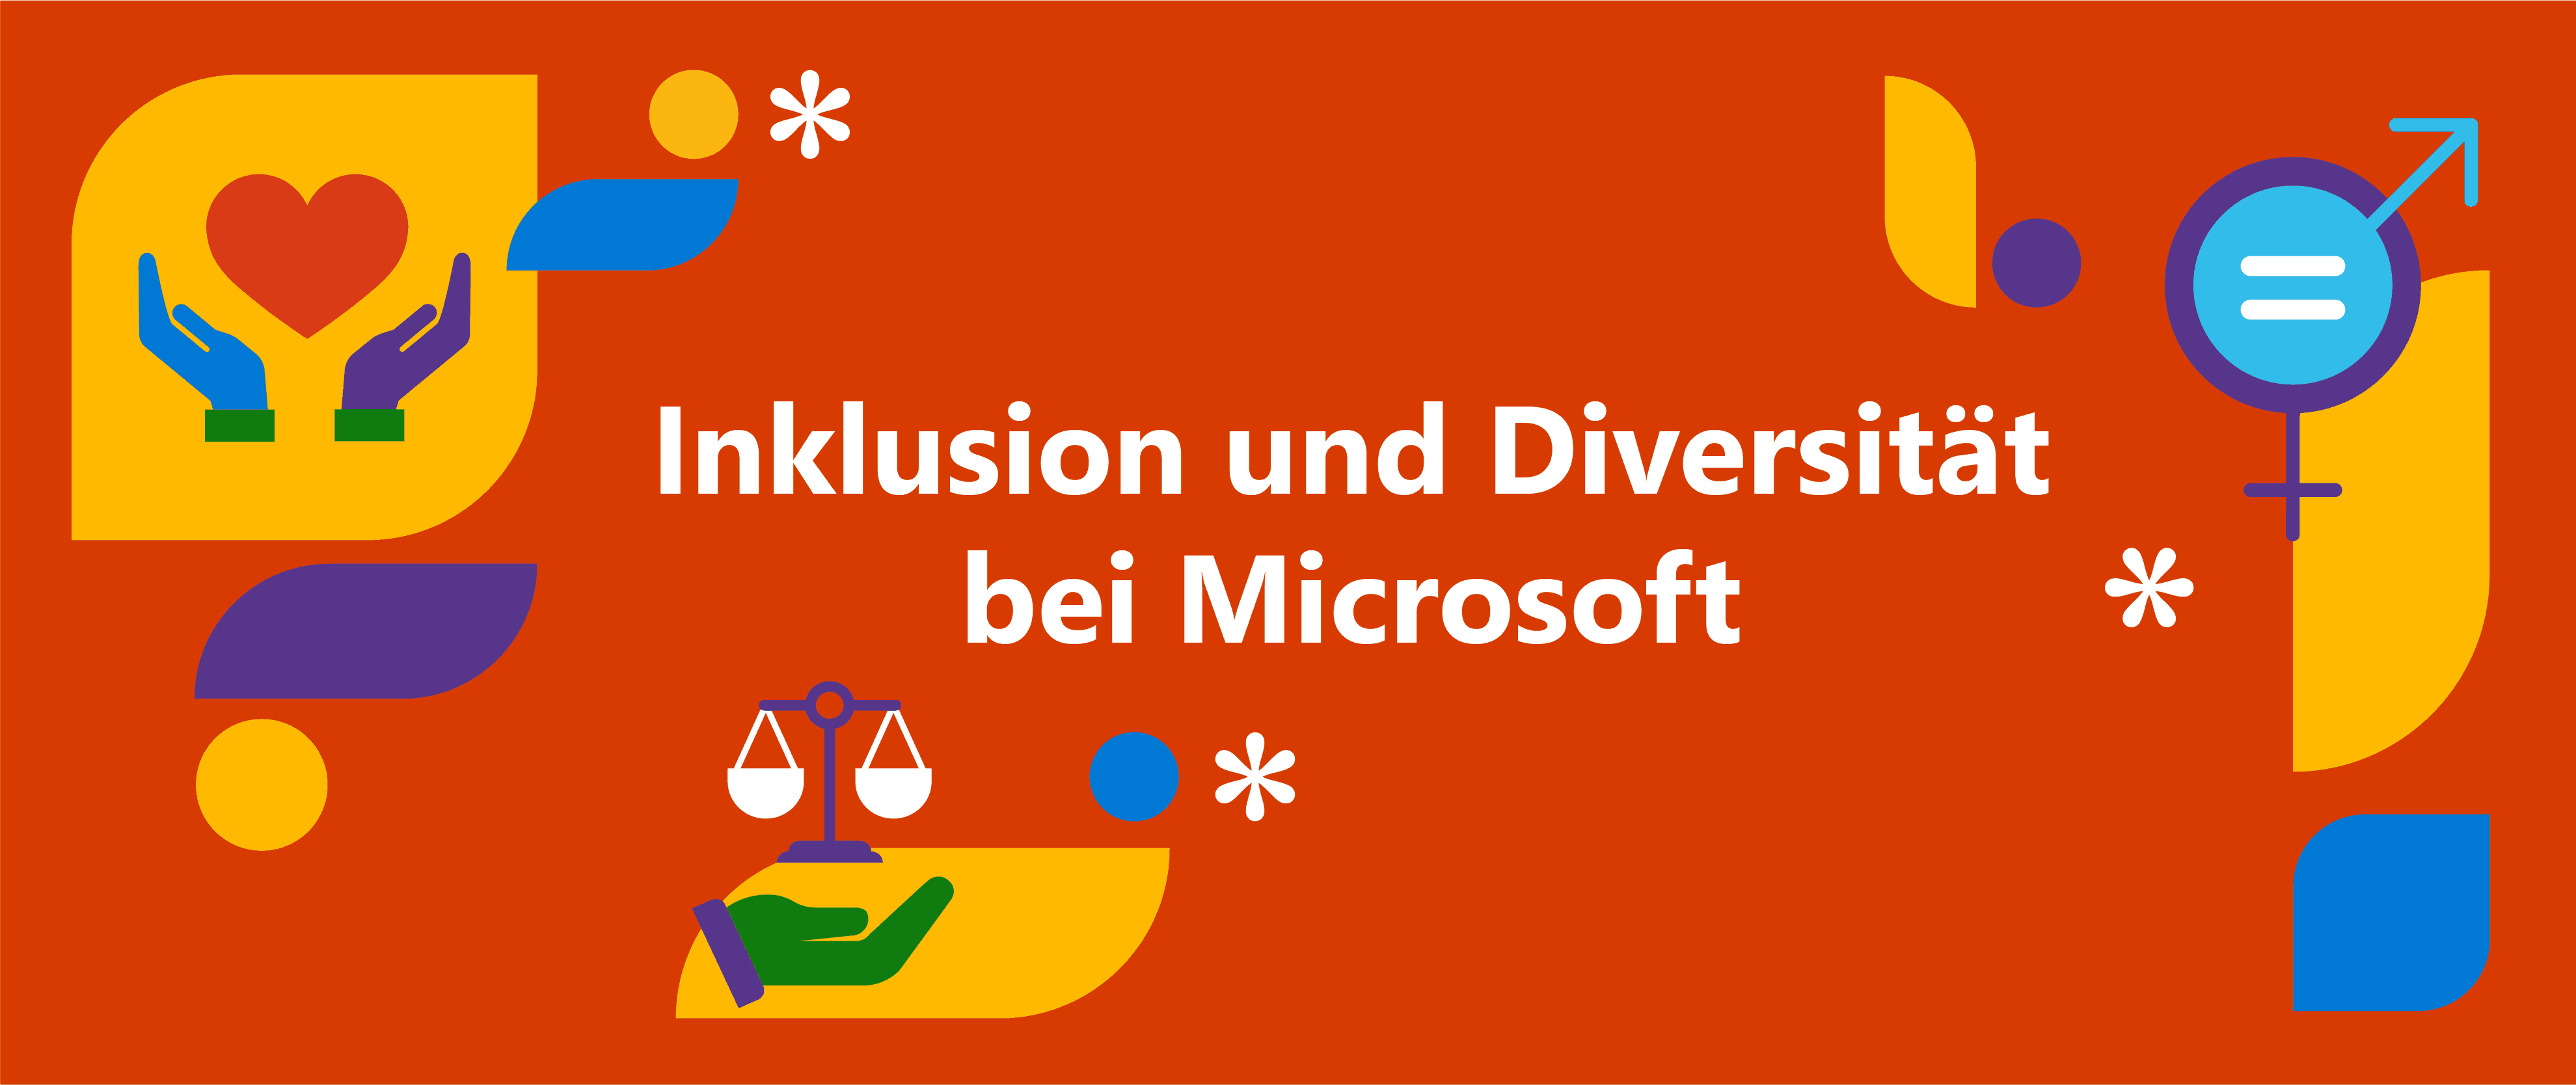 Eine Grafik mit dem Text "Inklusion und Diversität bei Microsoft" auf einem roten Hintergrund